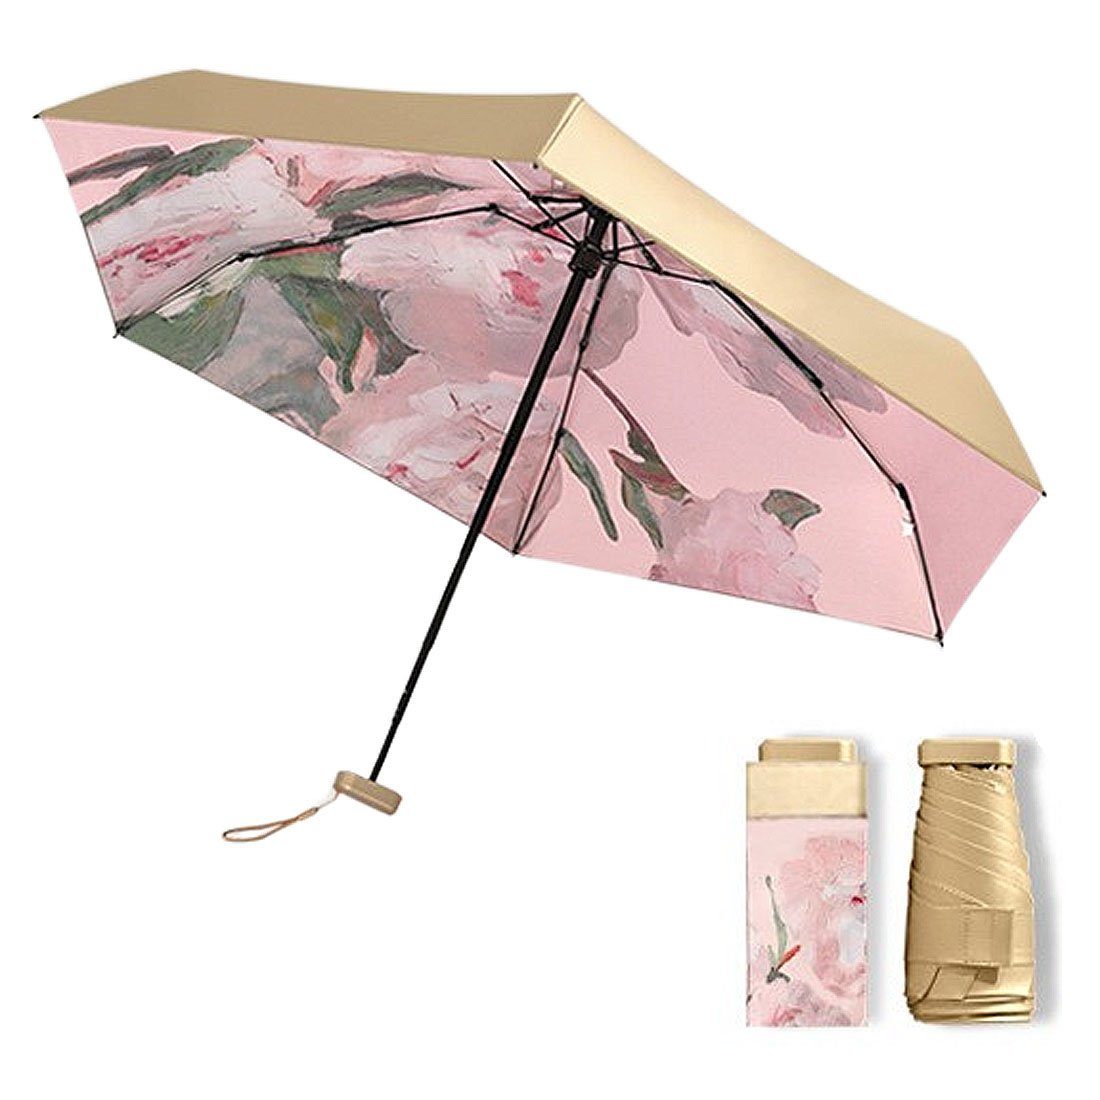 regenfest, winddicht DÖRÖY UV-Ölmalerei Regenschirm, Taschenregenschirm tragbarer Klappschirm,